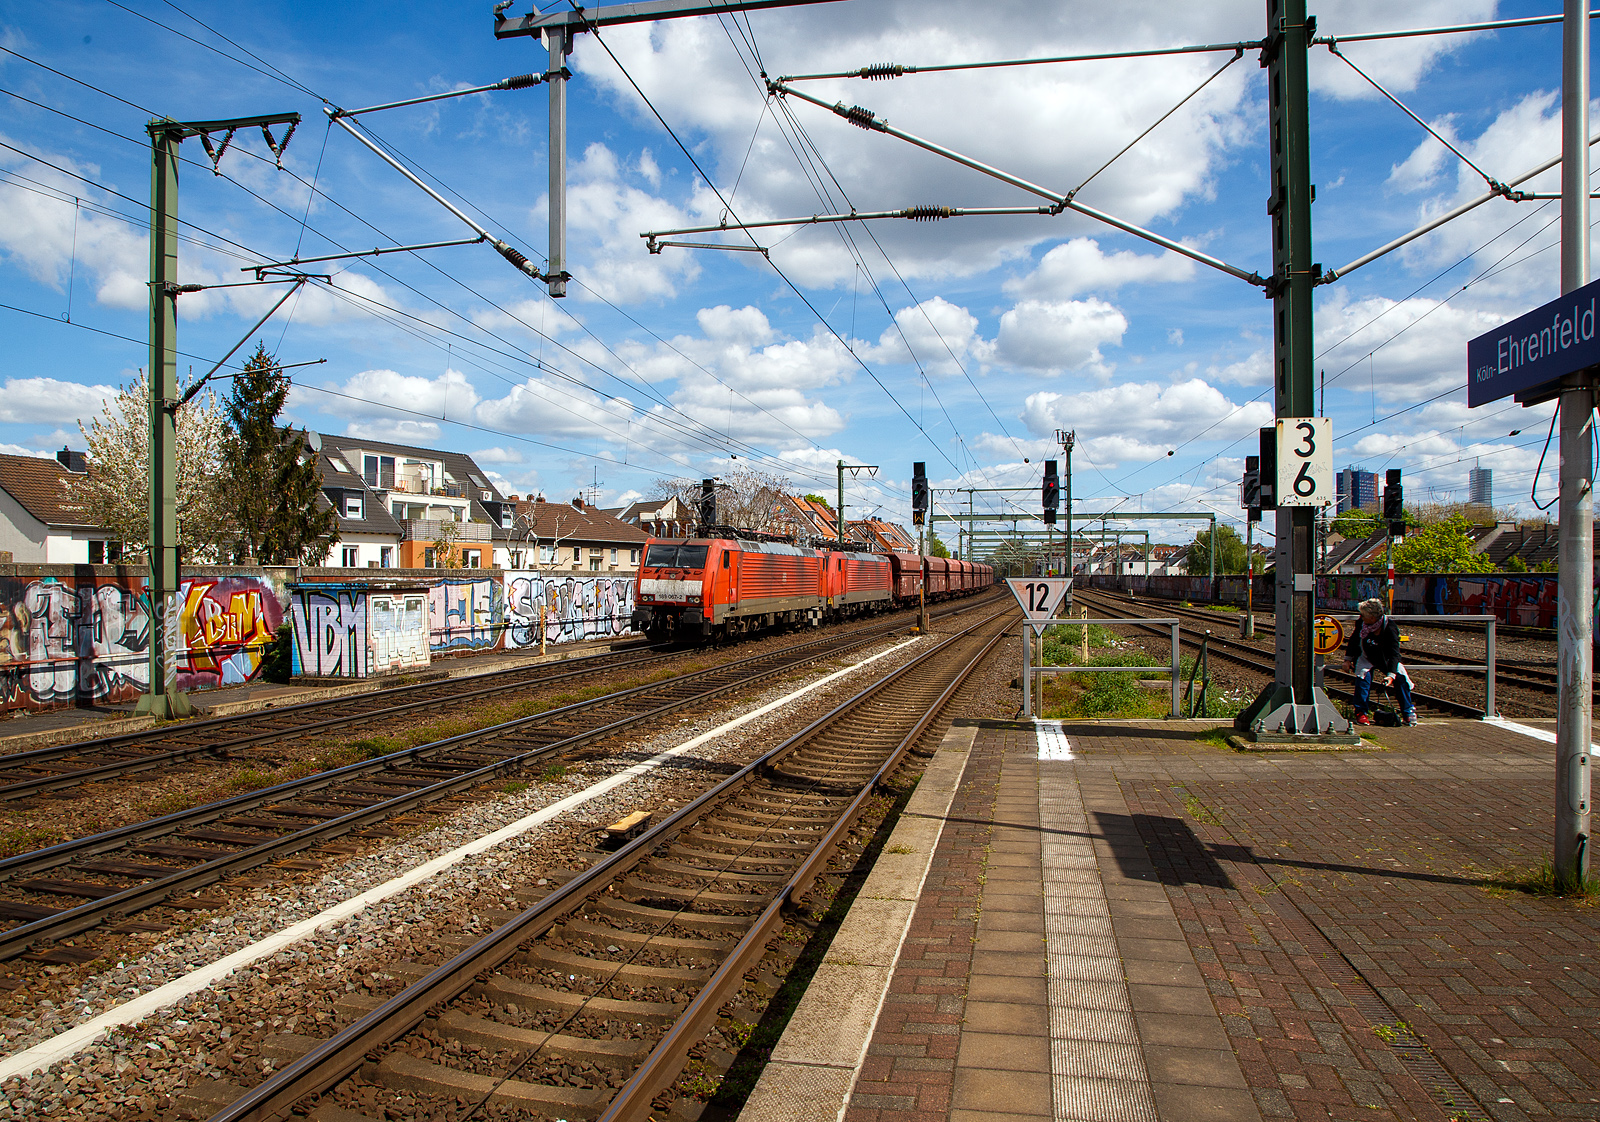 Ein „Erzbomber“...
In Doppeltraktion fahren die 189 067-2 (91 80 6189 067-2 D-DB) und die 189 038-3 (91 80 6189 038-3 D-DB) beide der DB Cargo AG am 30.04.2023 mit einem Erzzug durch den Bahnhof Köln-Ehrenfeld in Richtung Aachen. 

Der Erzzug besteht aus einigen 2 x sechsachsigen offenen Drehgestell-Schüttgut-Wageneinheiten für den Erztransport mit schlagartiger Schwerkraftentladung, hydraulischem Klappenverschlusssystem und automatischer Kupplung, der Gattung Falrrs 152. Auffällig ist das die 189 067-2 vorne keine AK-Kupplung besitzt, sondern eine Schraubenkupplung hat.